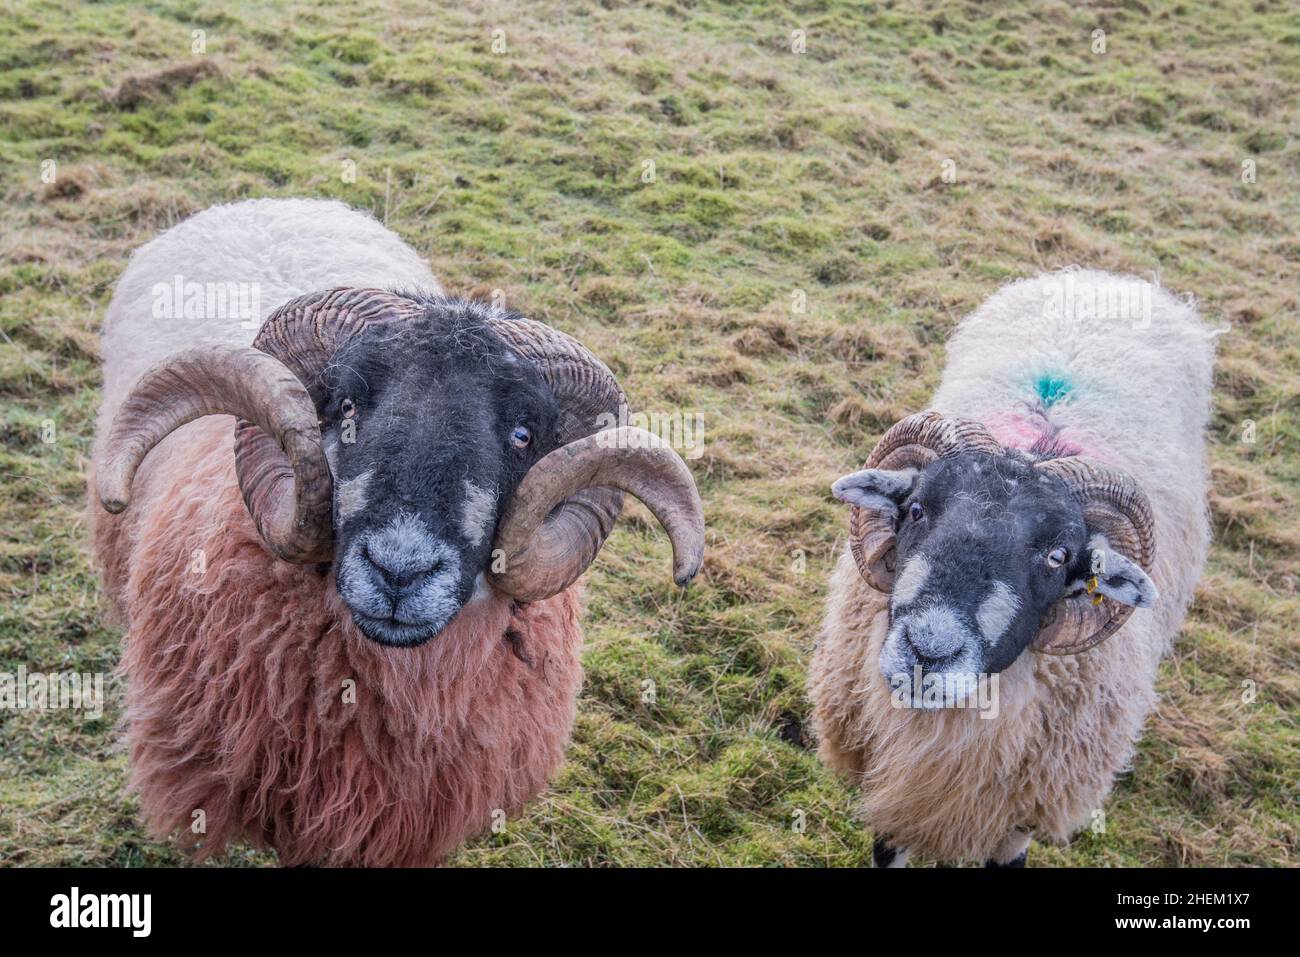 Gehörnte männliche Schafe (Jungschafe) mit einem schwarzen Gesicht und einem dicken Wollmantel. Stockfoto